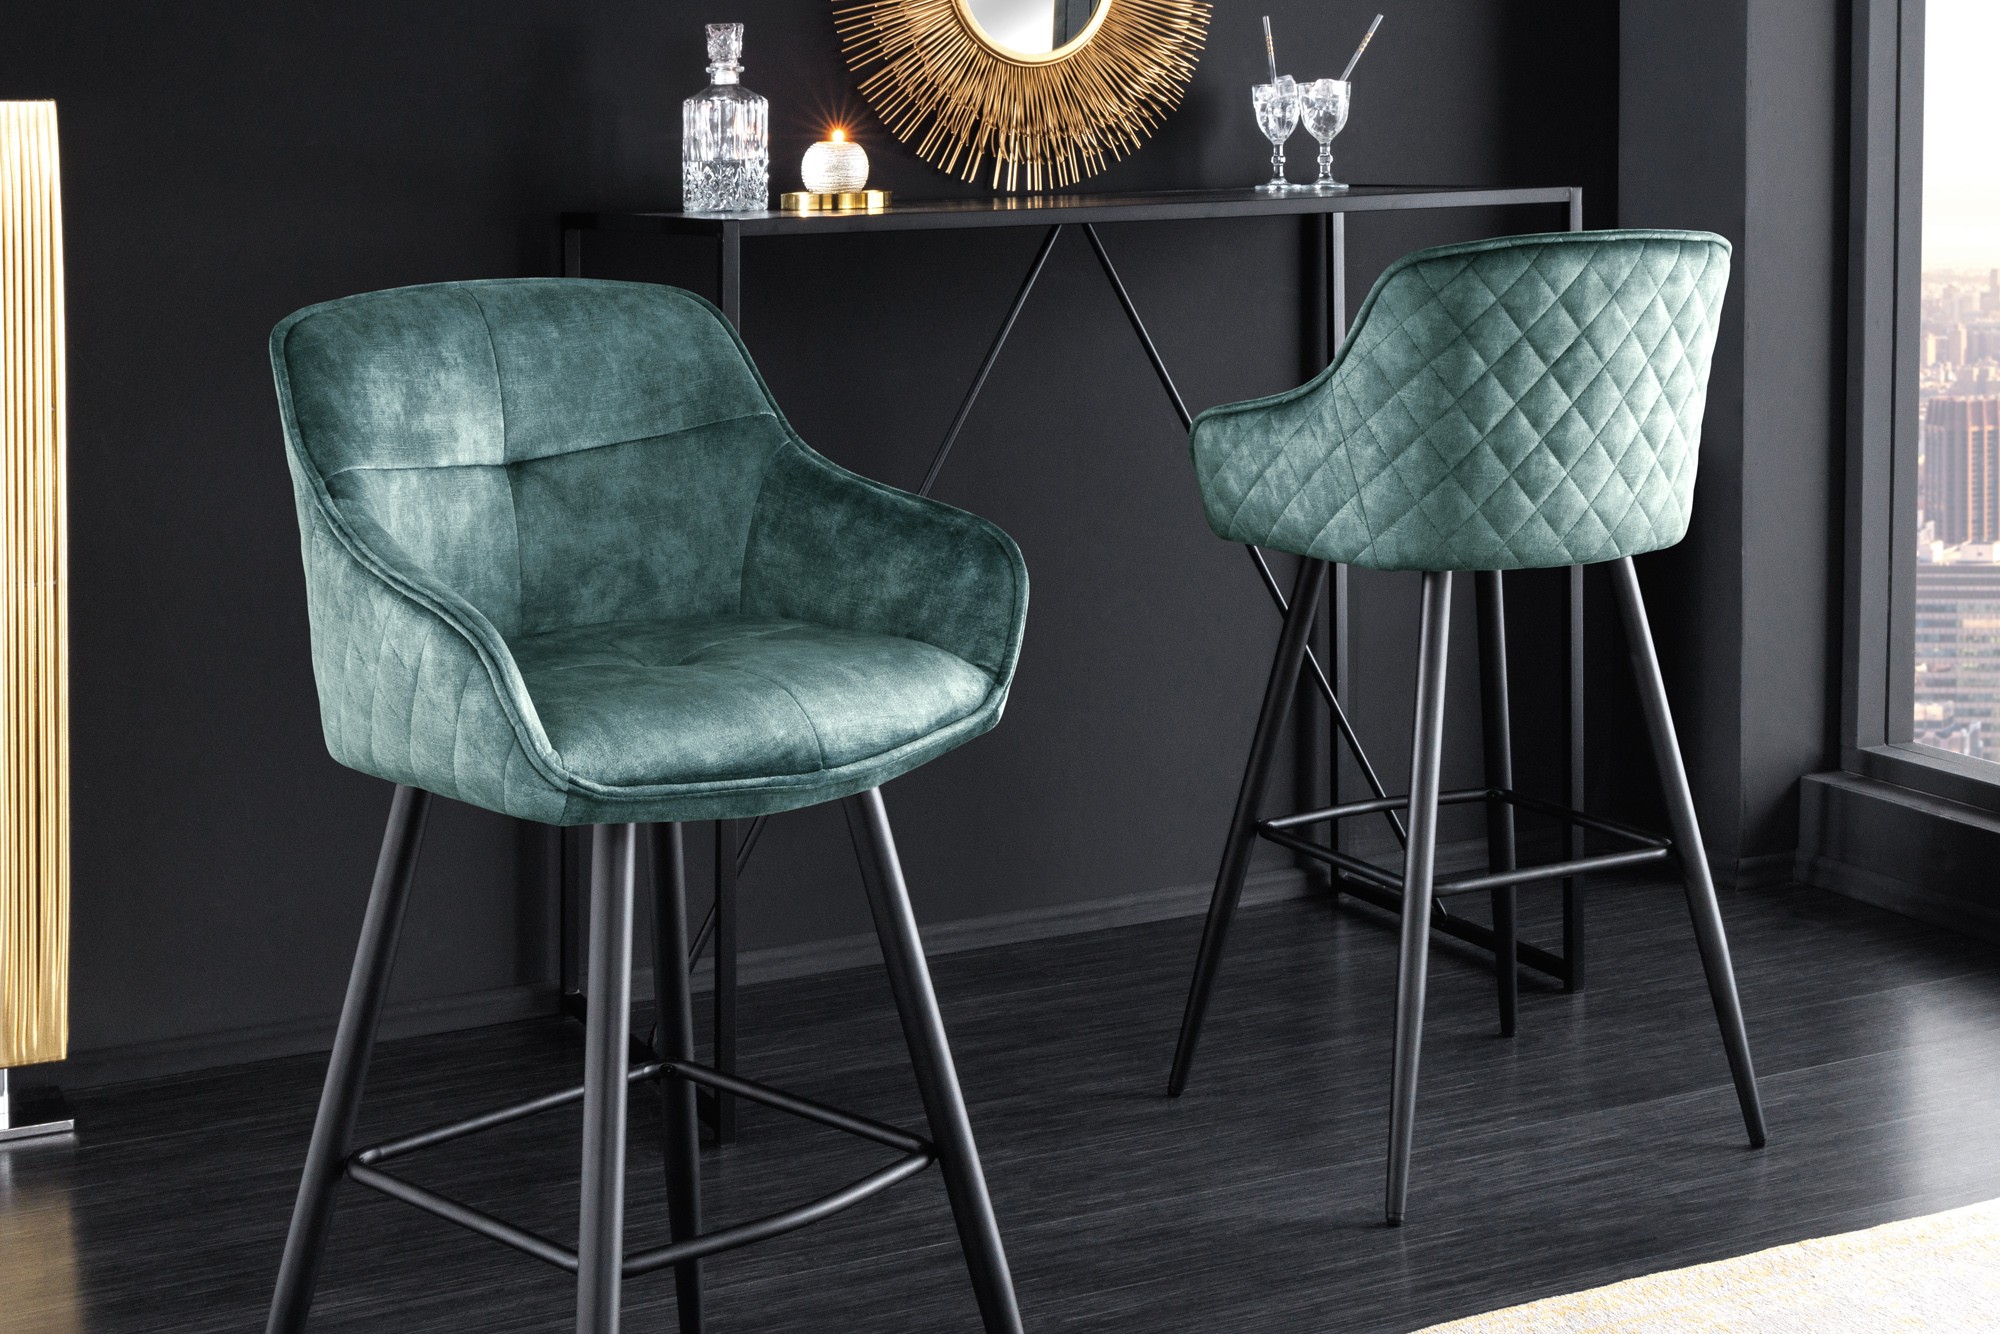 Estila Designová glamour barová židle Rufus s modrozeleným sametovým potahem a černou kovovou konstrukcí 100cm